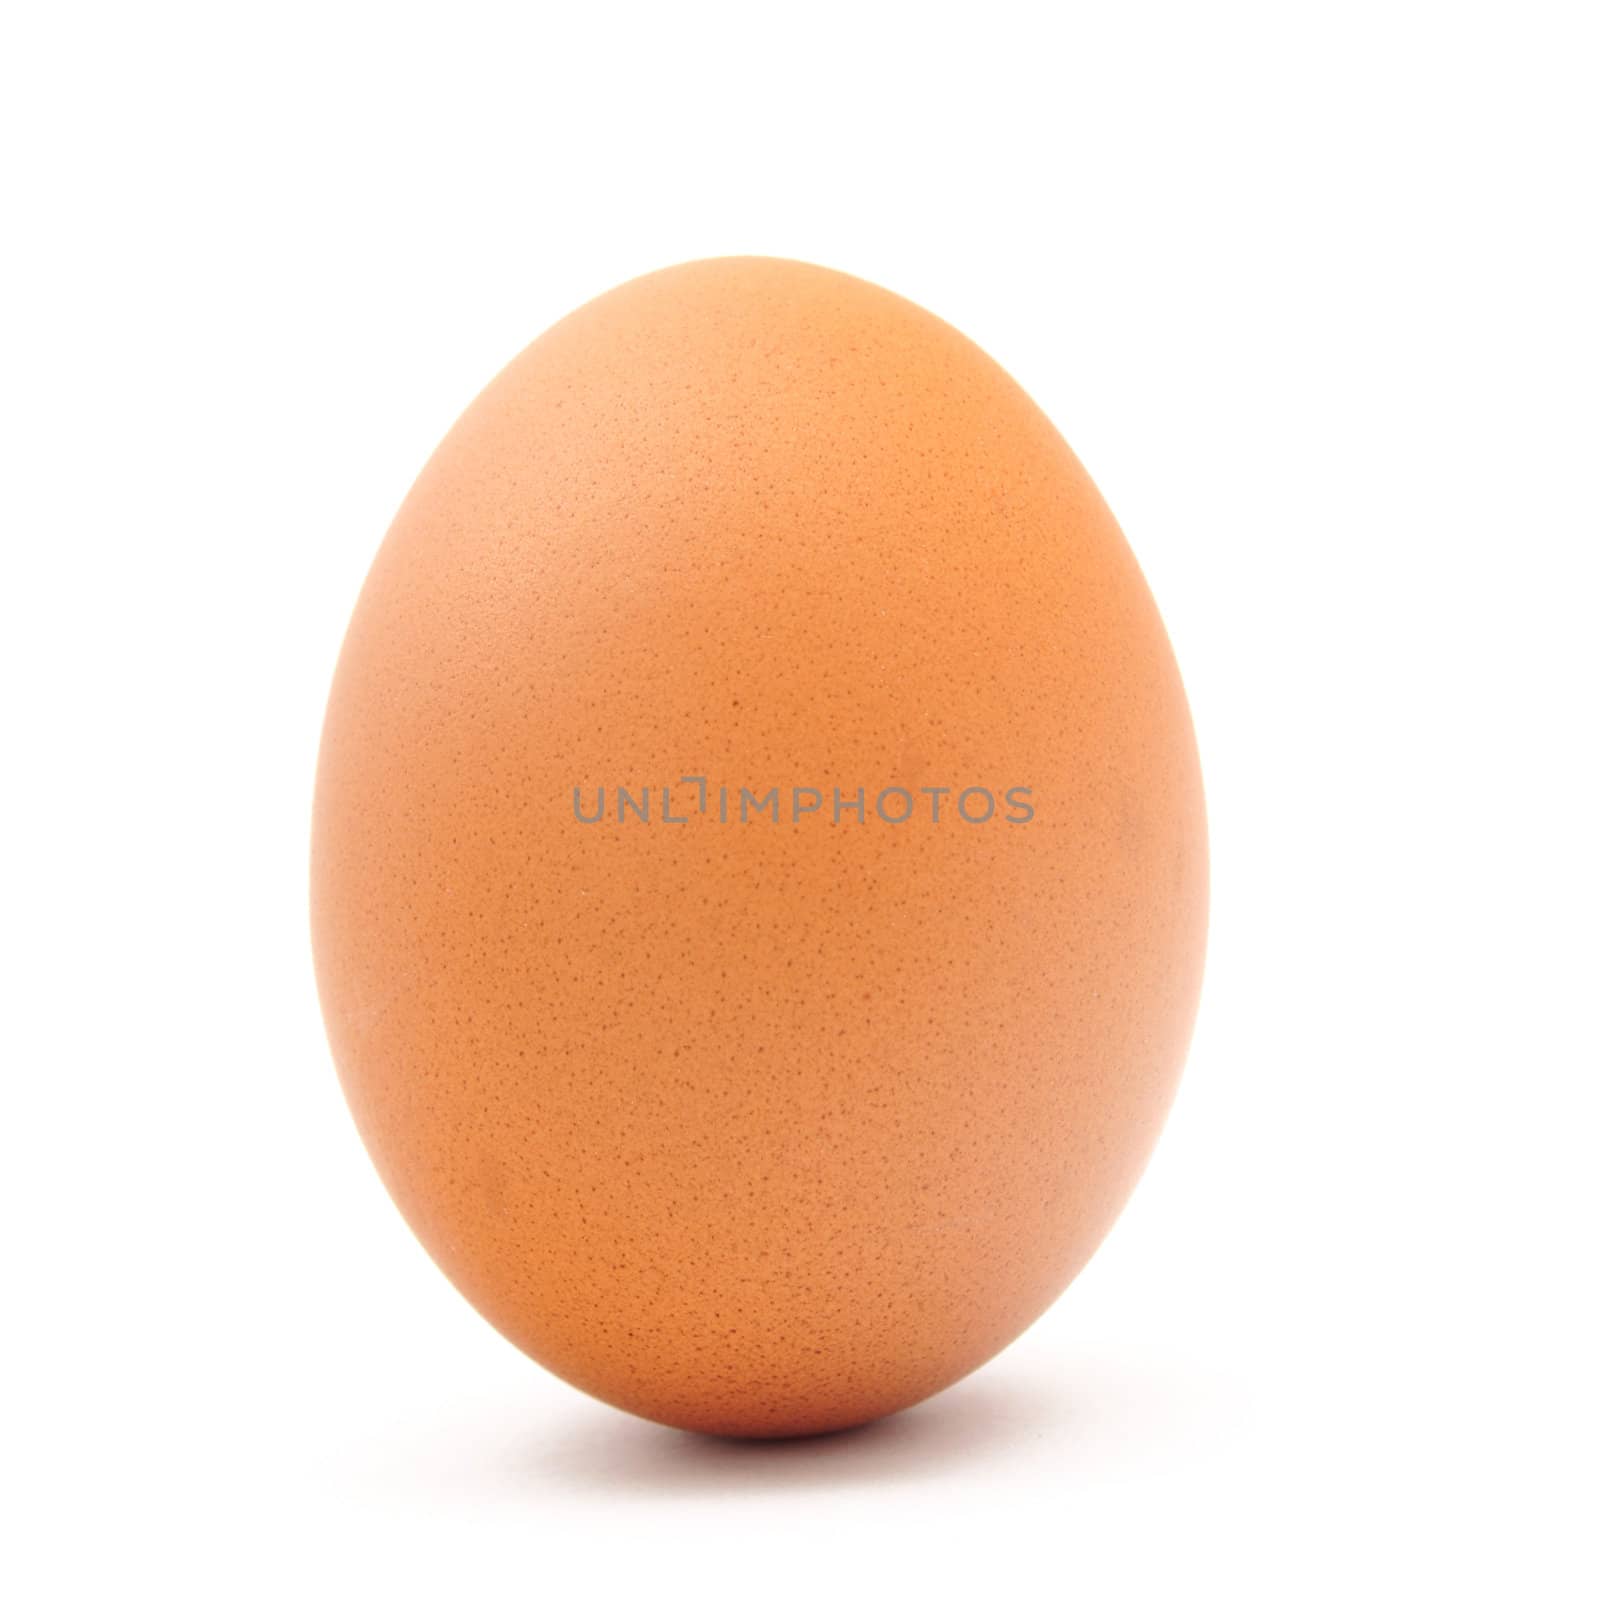 egg by antpkr